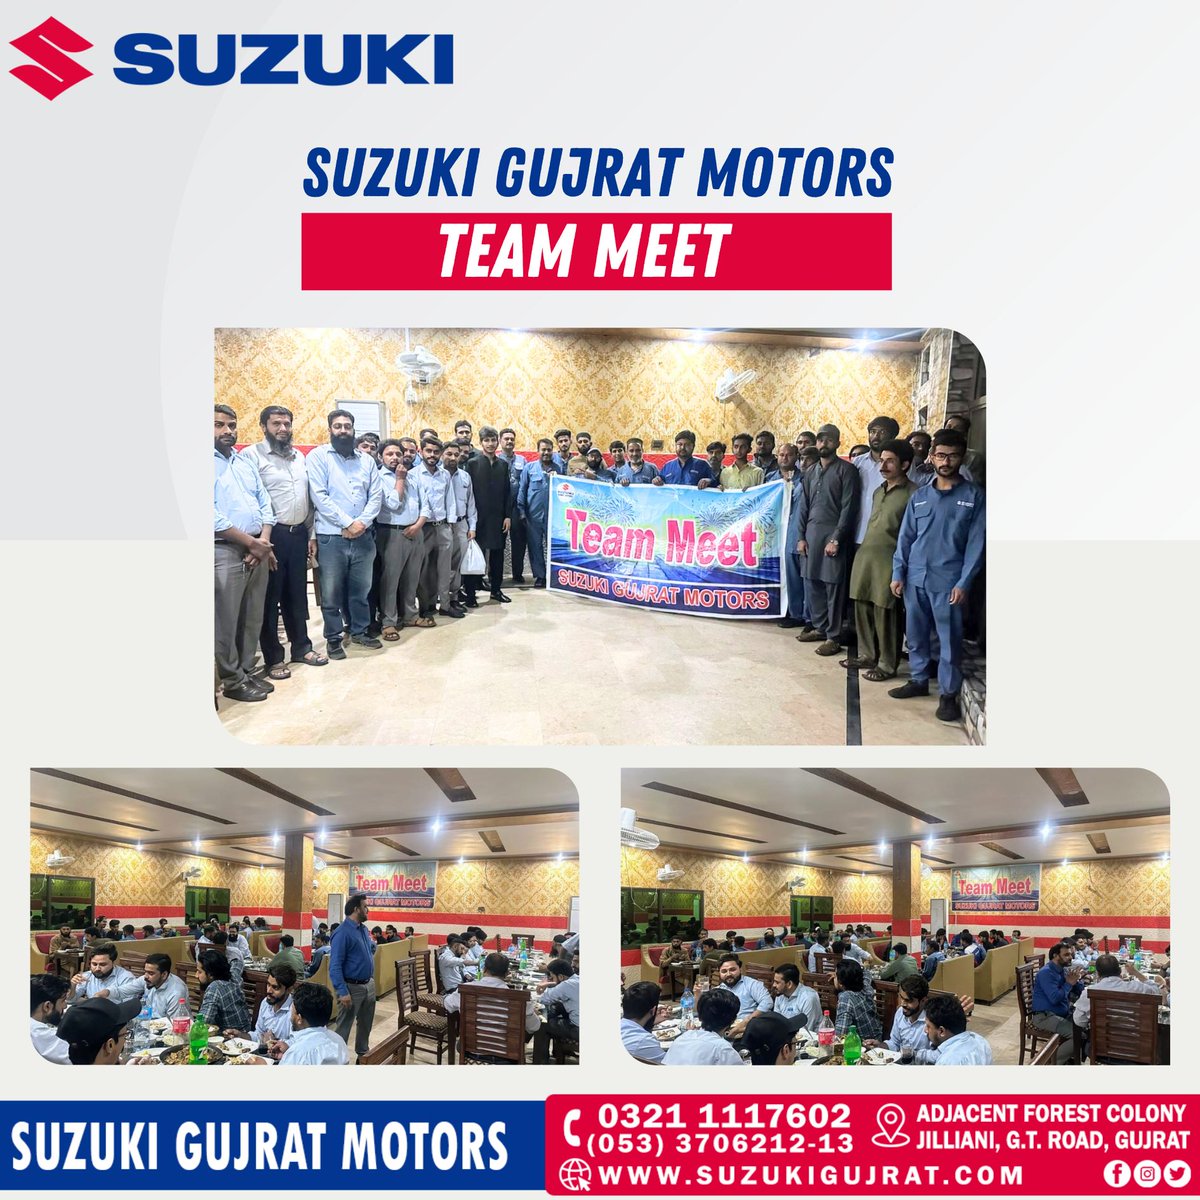 A few glimpses of Suzuki Gujrat Motors Team Meet!

#Suzuki #TeamMeet #SuzukiCenterGujrat #SuzukiGujratMotors #SuzukiPakistan